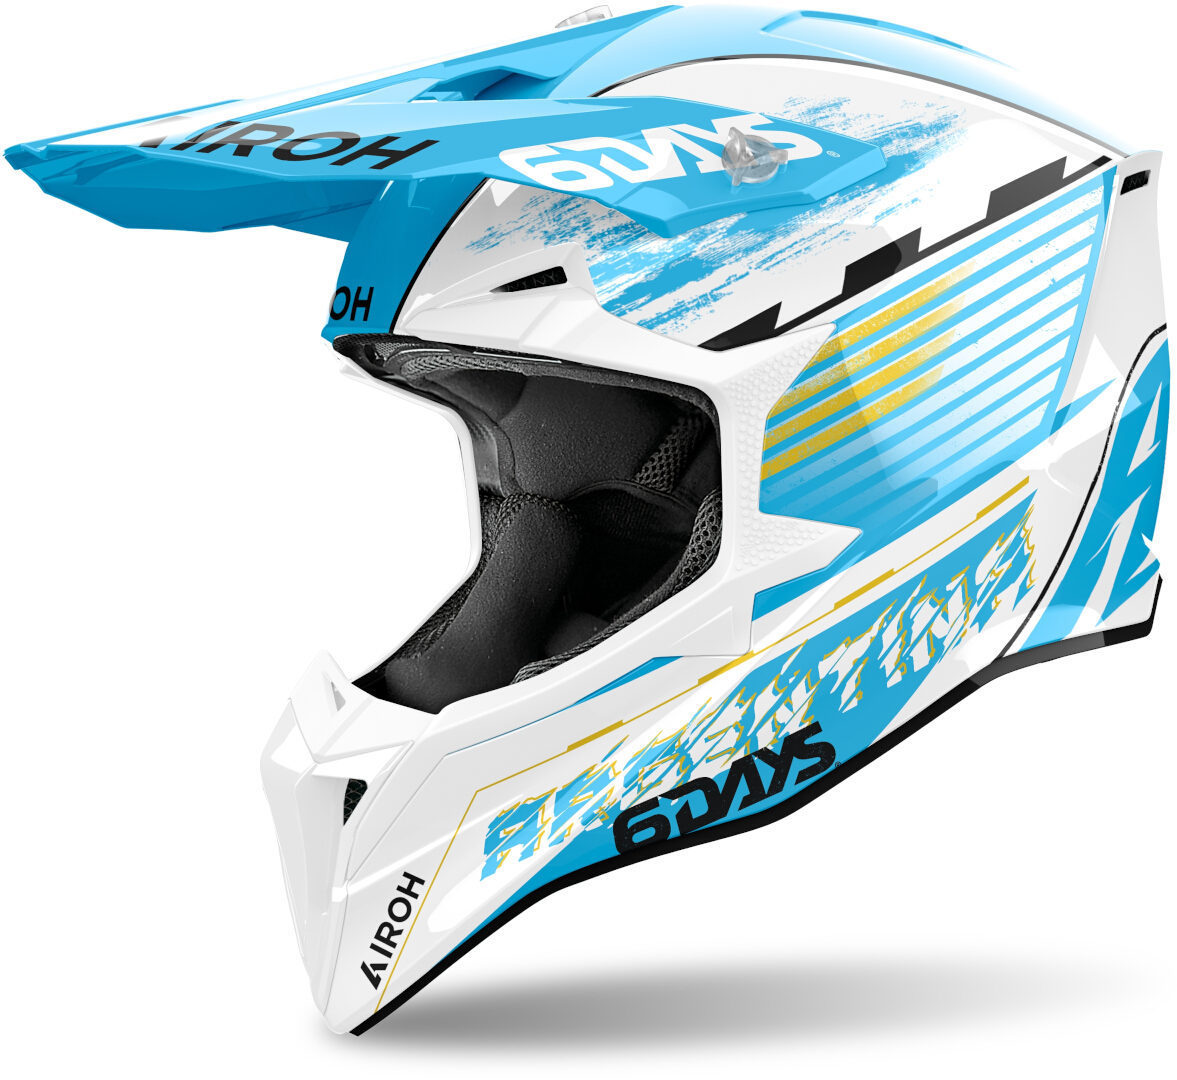 Airoh Wraaap Six Days Argentina Motocross Helm, mehrfarbig, Größe XL